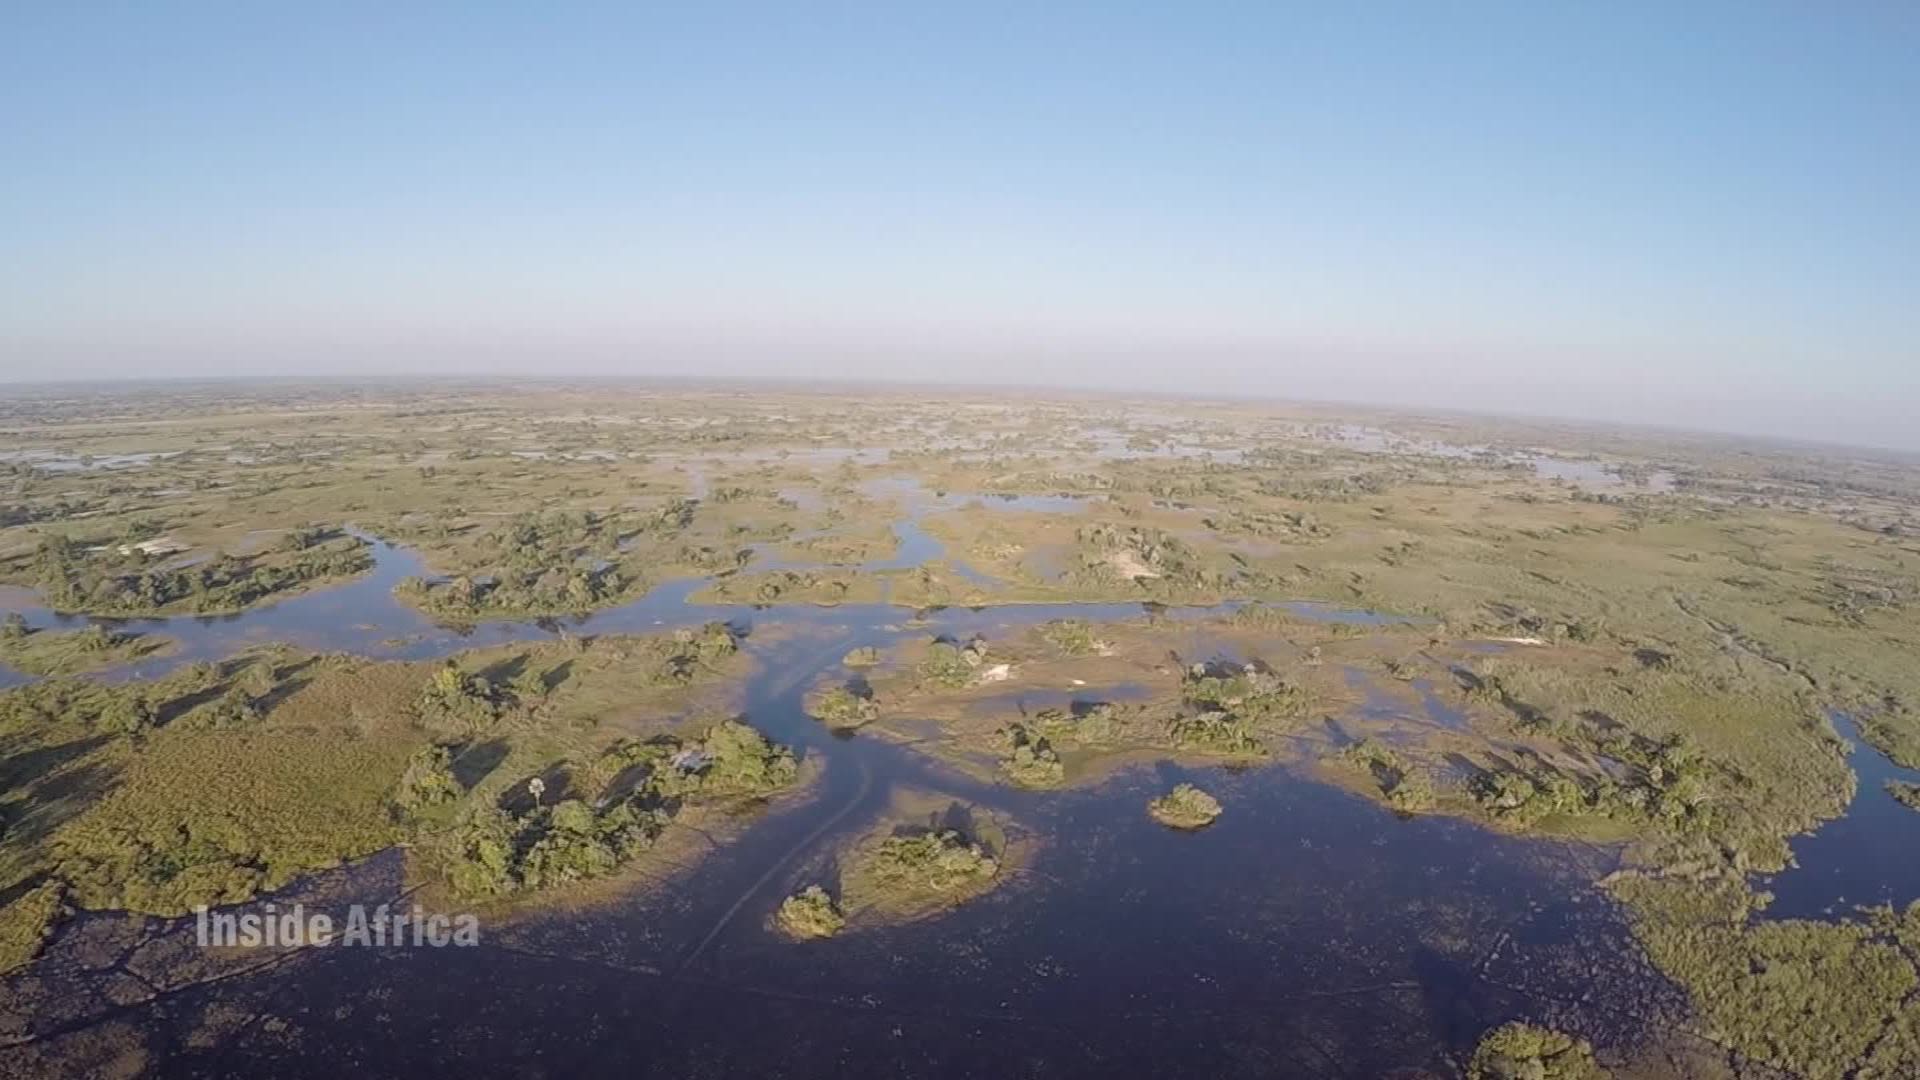 Discover Okavango Delta, Largest Inland Delta